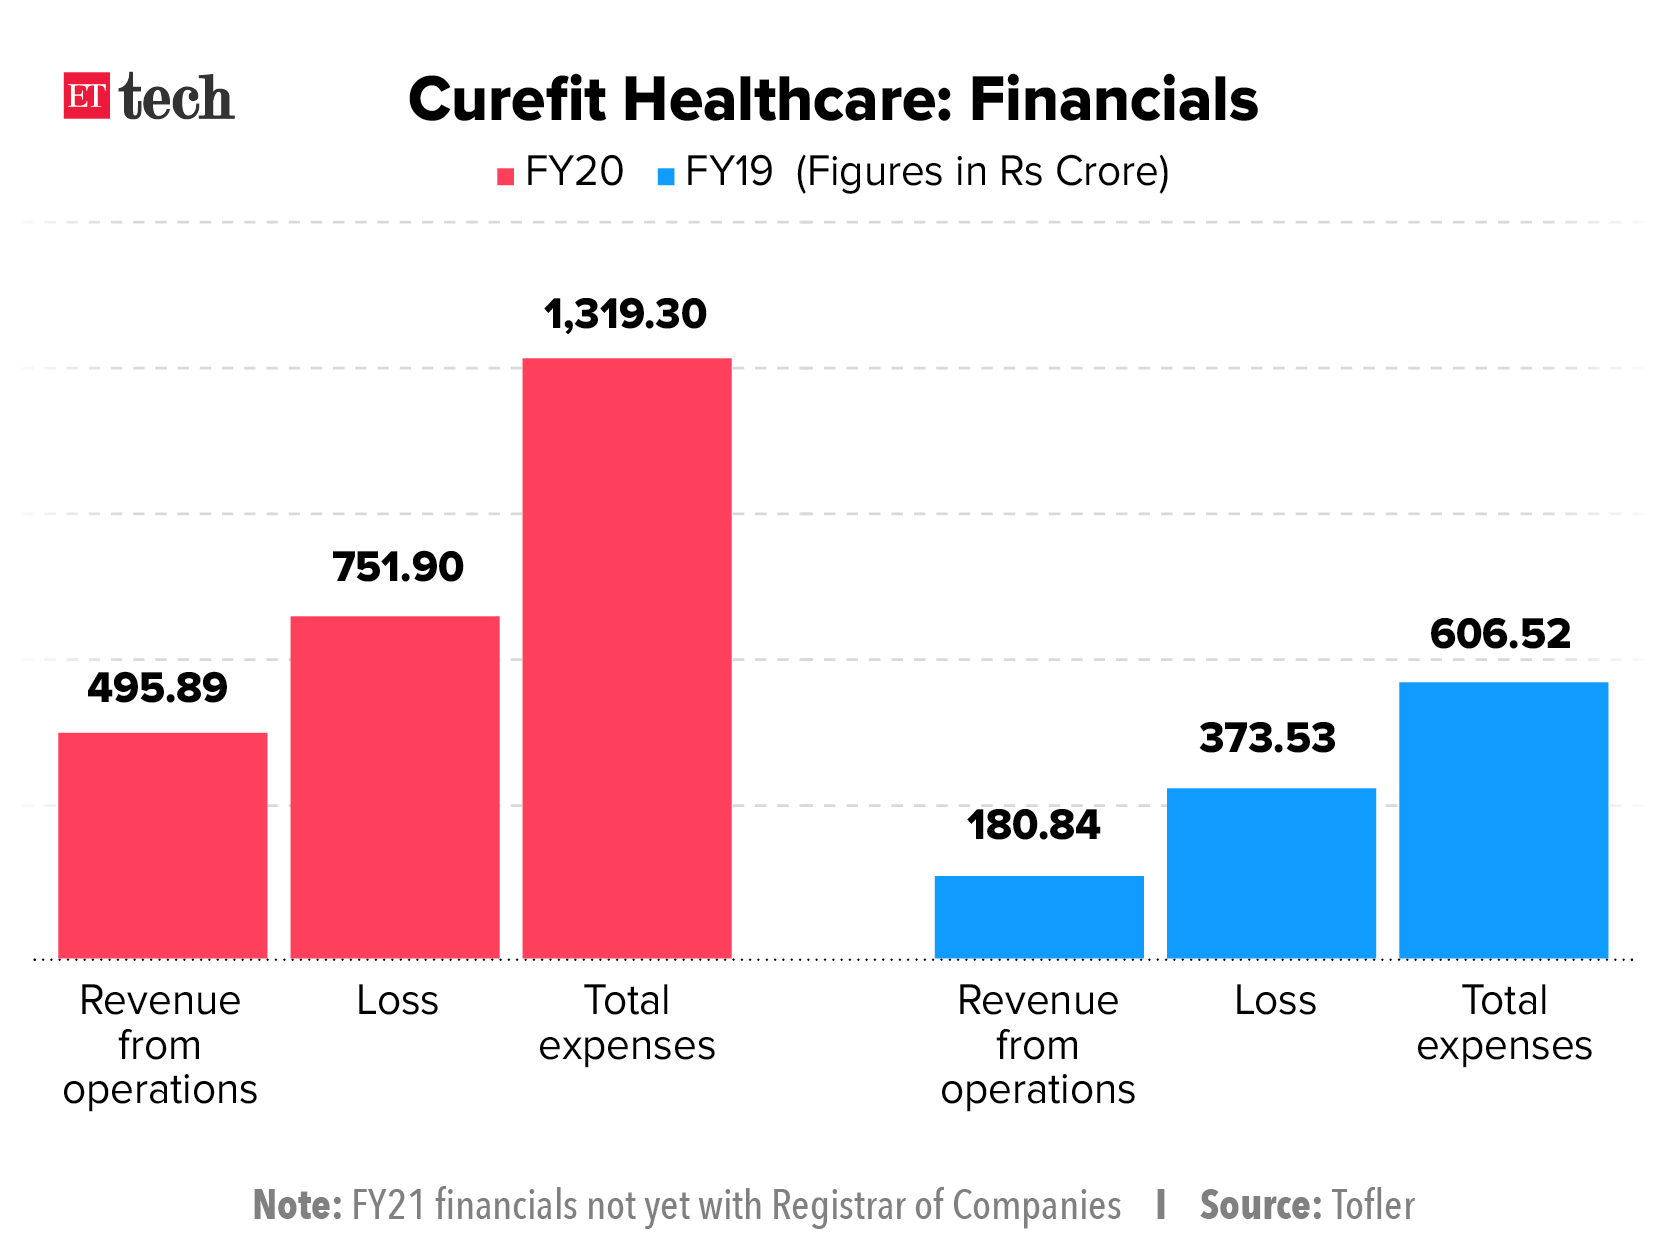 Curefit healthcare